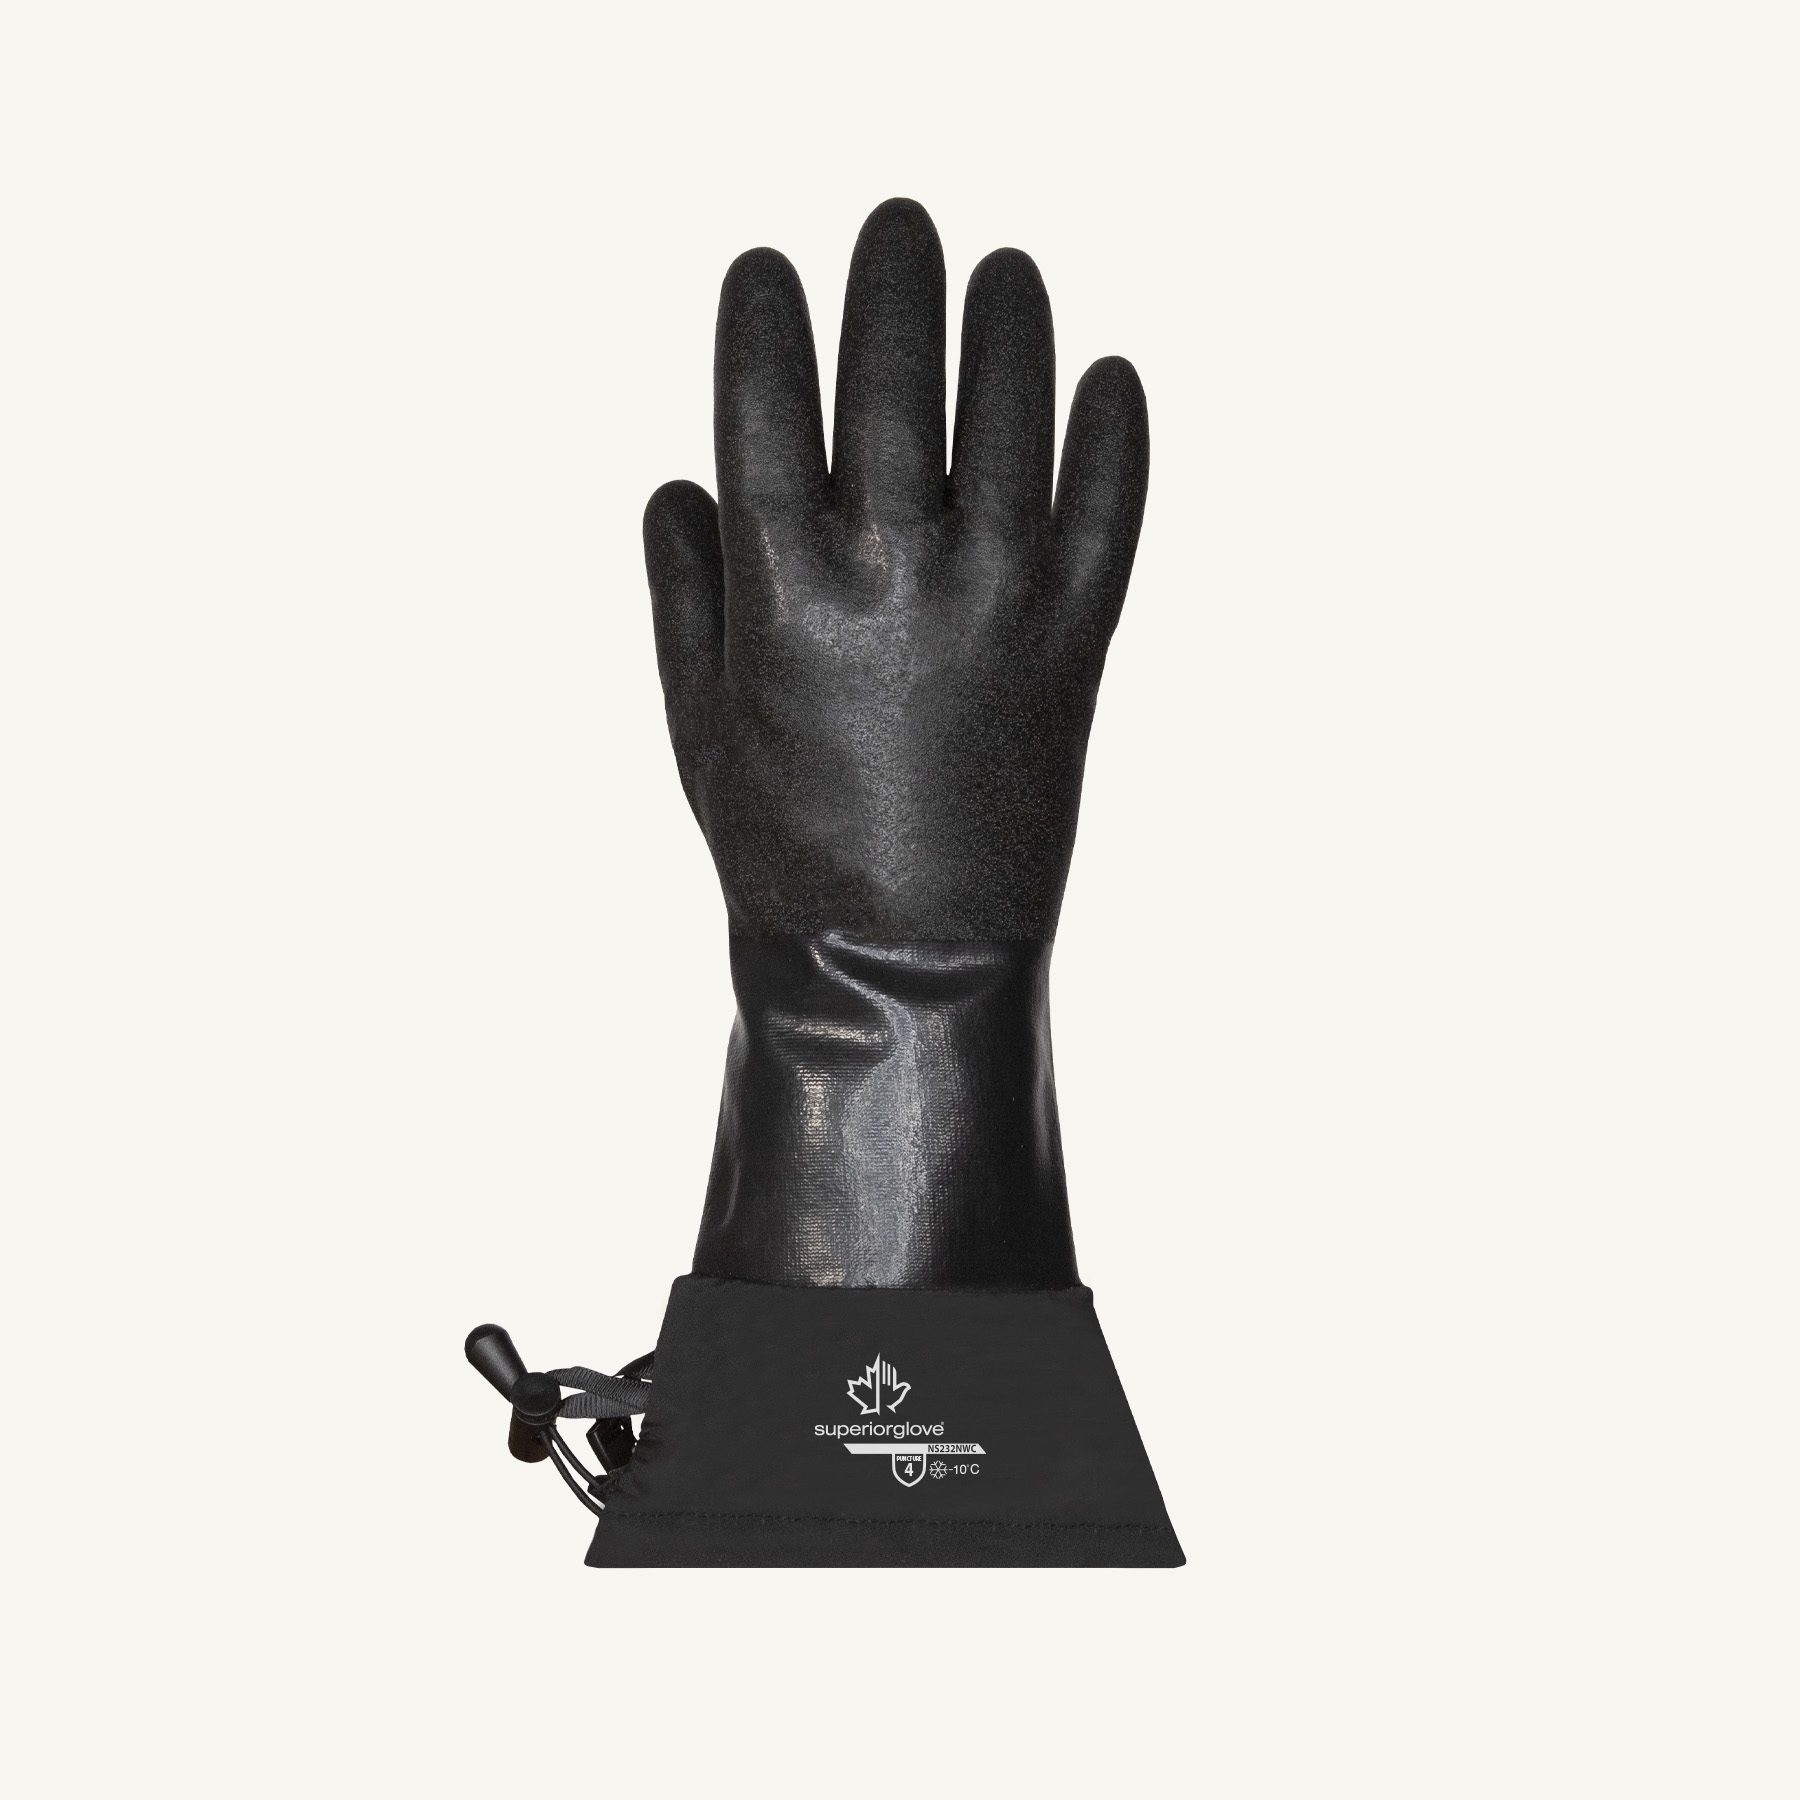 Tipos de guantes de seguridad - Superior Glove